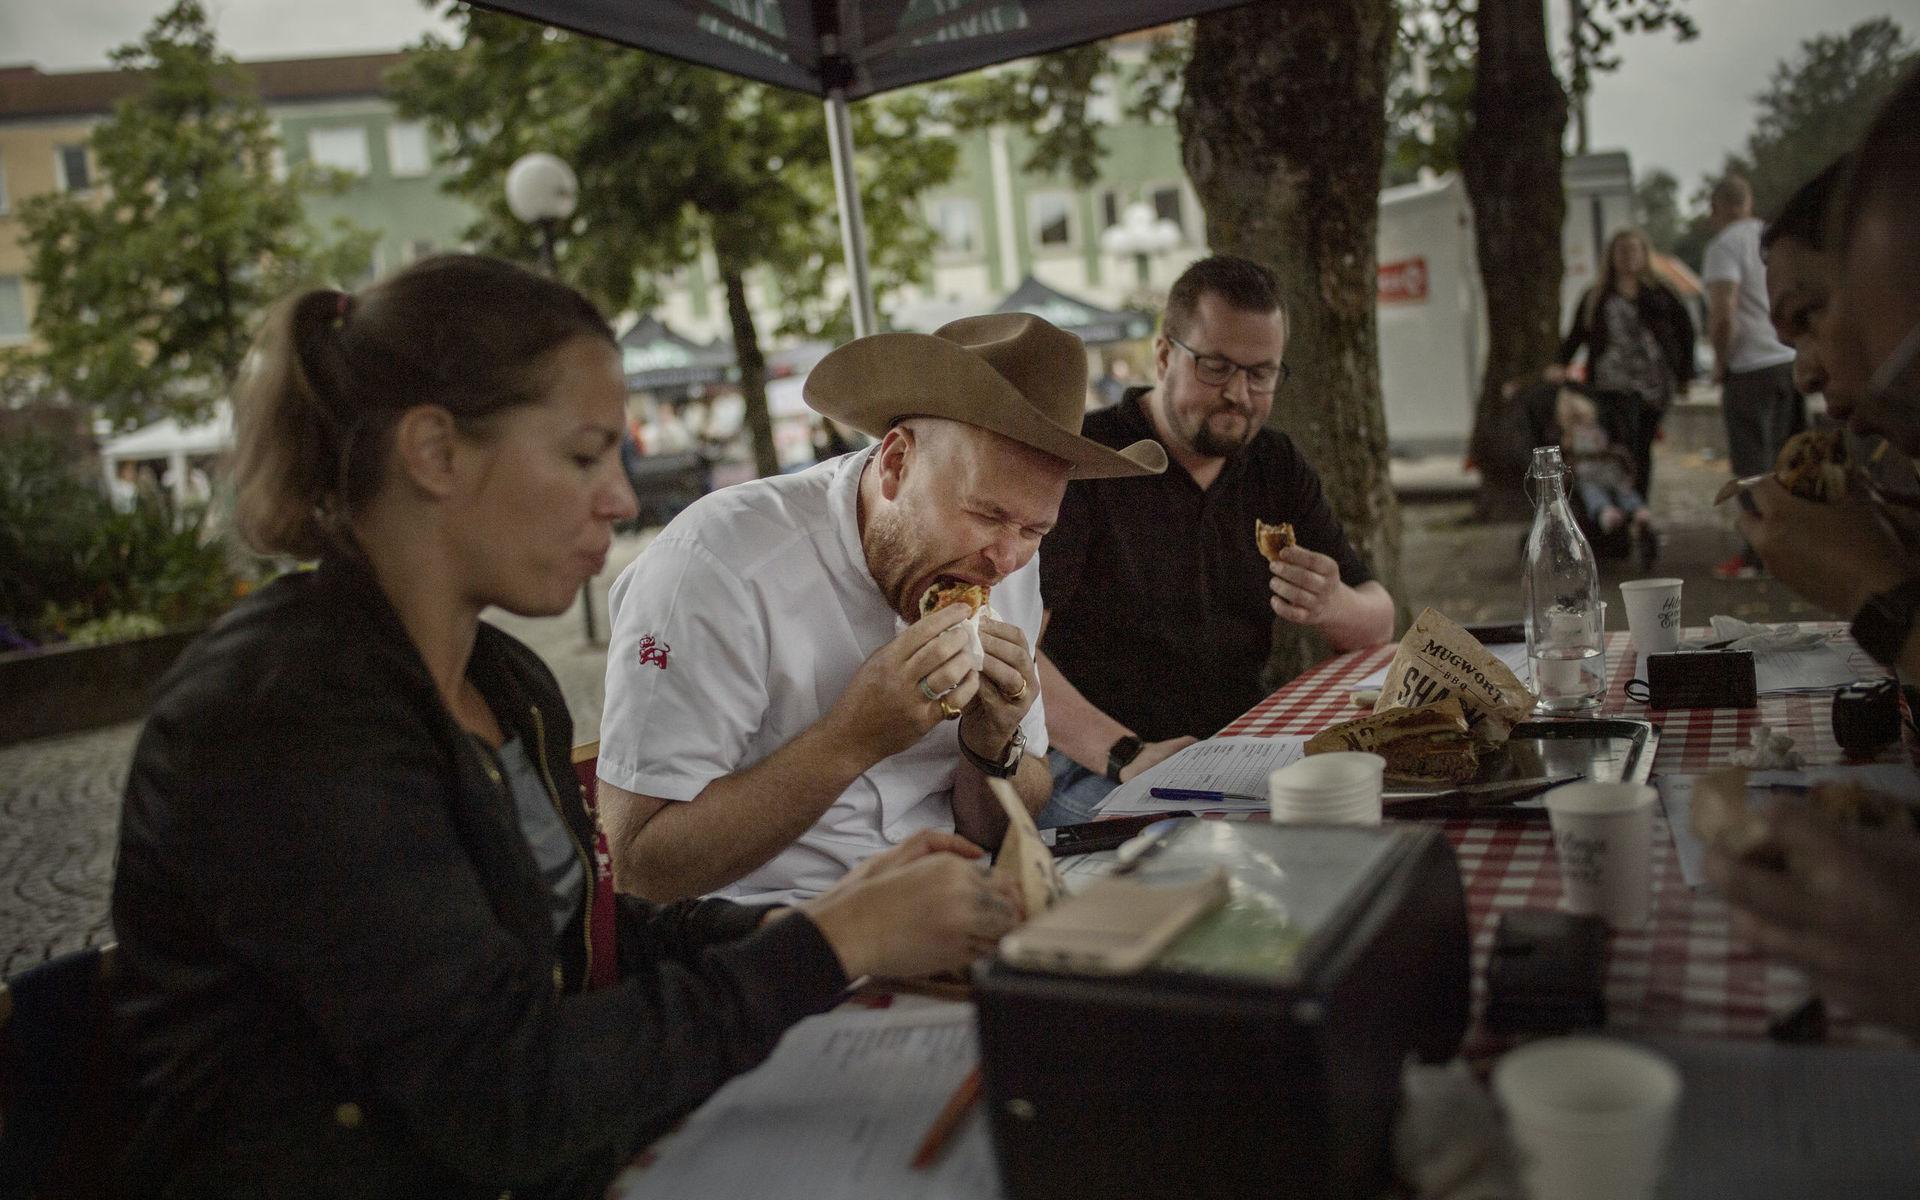 På bettet. Jurymedlemmen Johan Jureskog smakar på en av de tävlade hamburgarna. Vid sin sida har han jurykollegorna Sara Kullberg och Nils Thuresson.